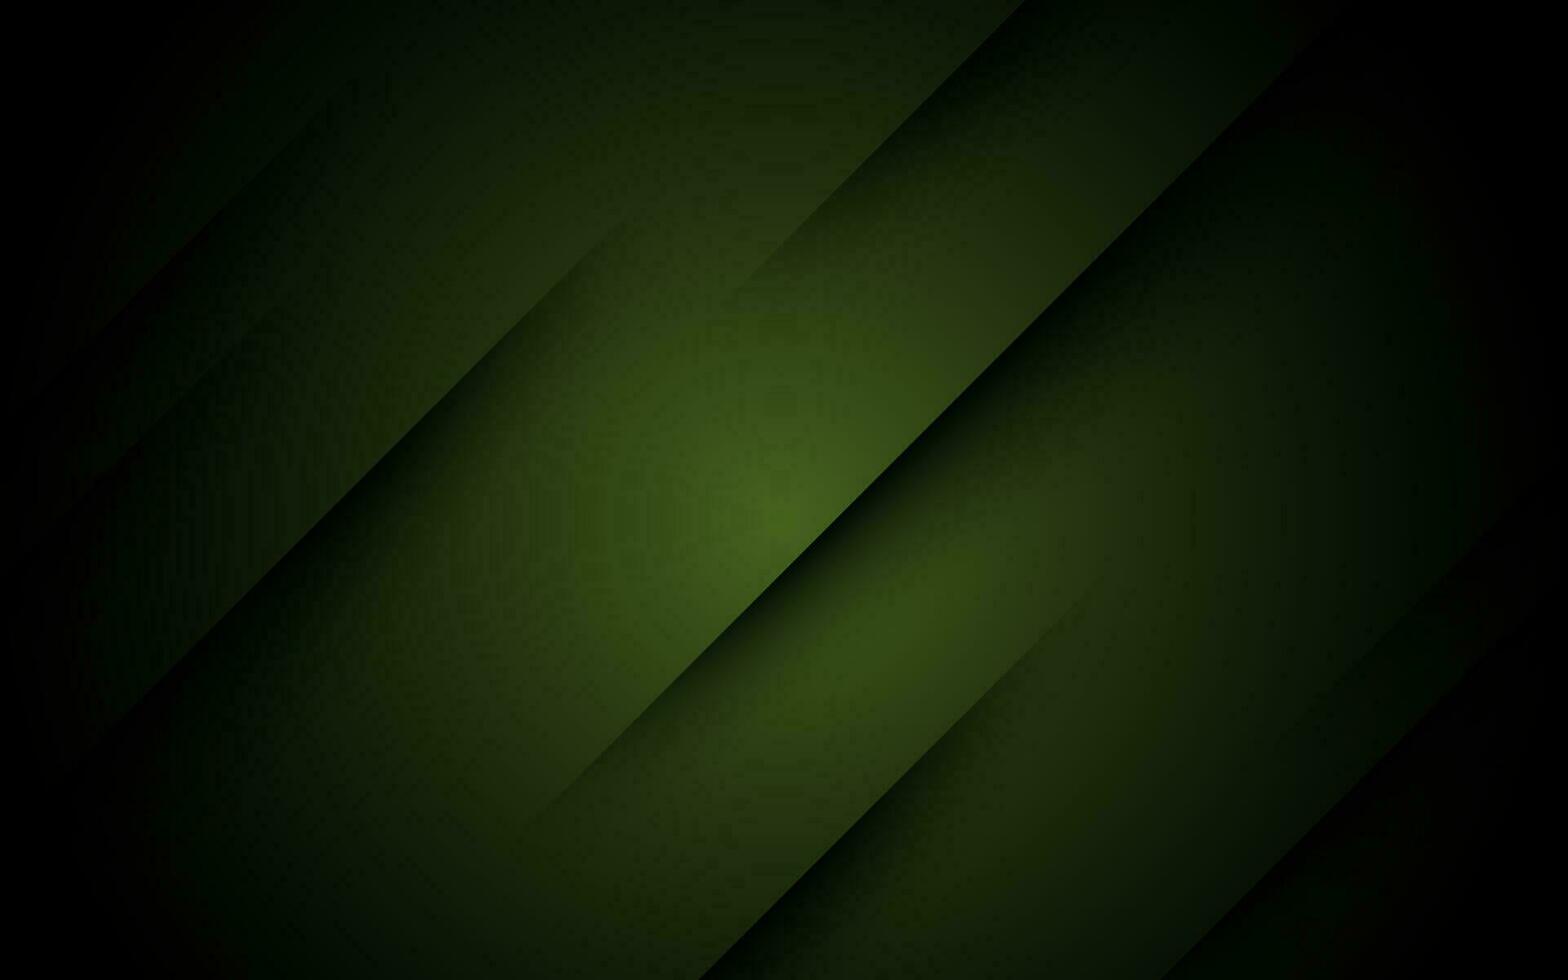 abstrakt schwarz Grün Gradient Farbe diagonal Streifen Schatten gestalten 3d aussehen Hintergrund. eps10 Vektor